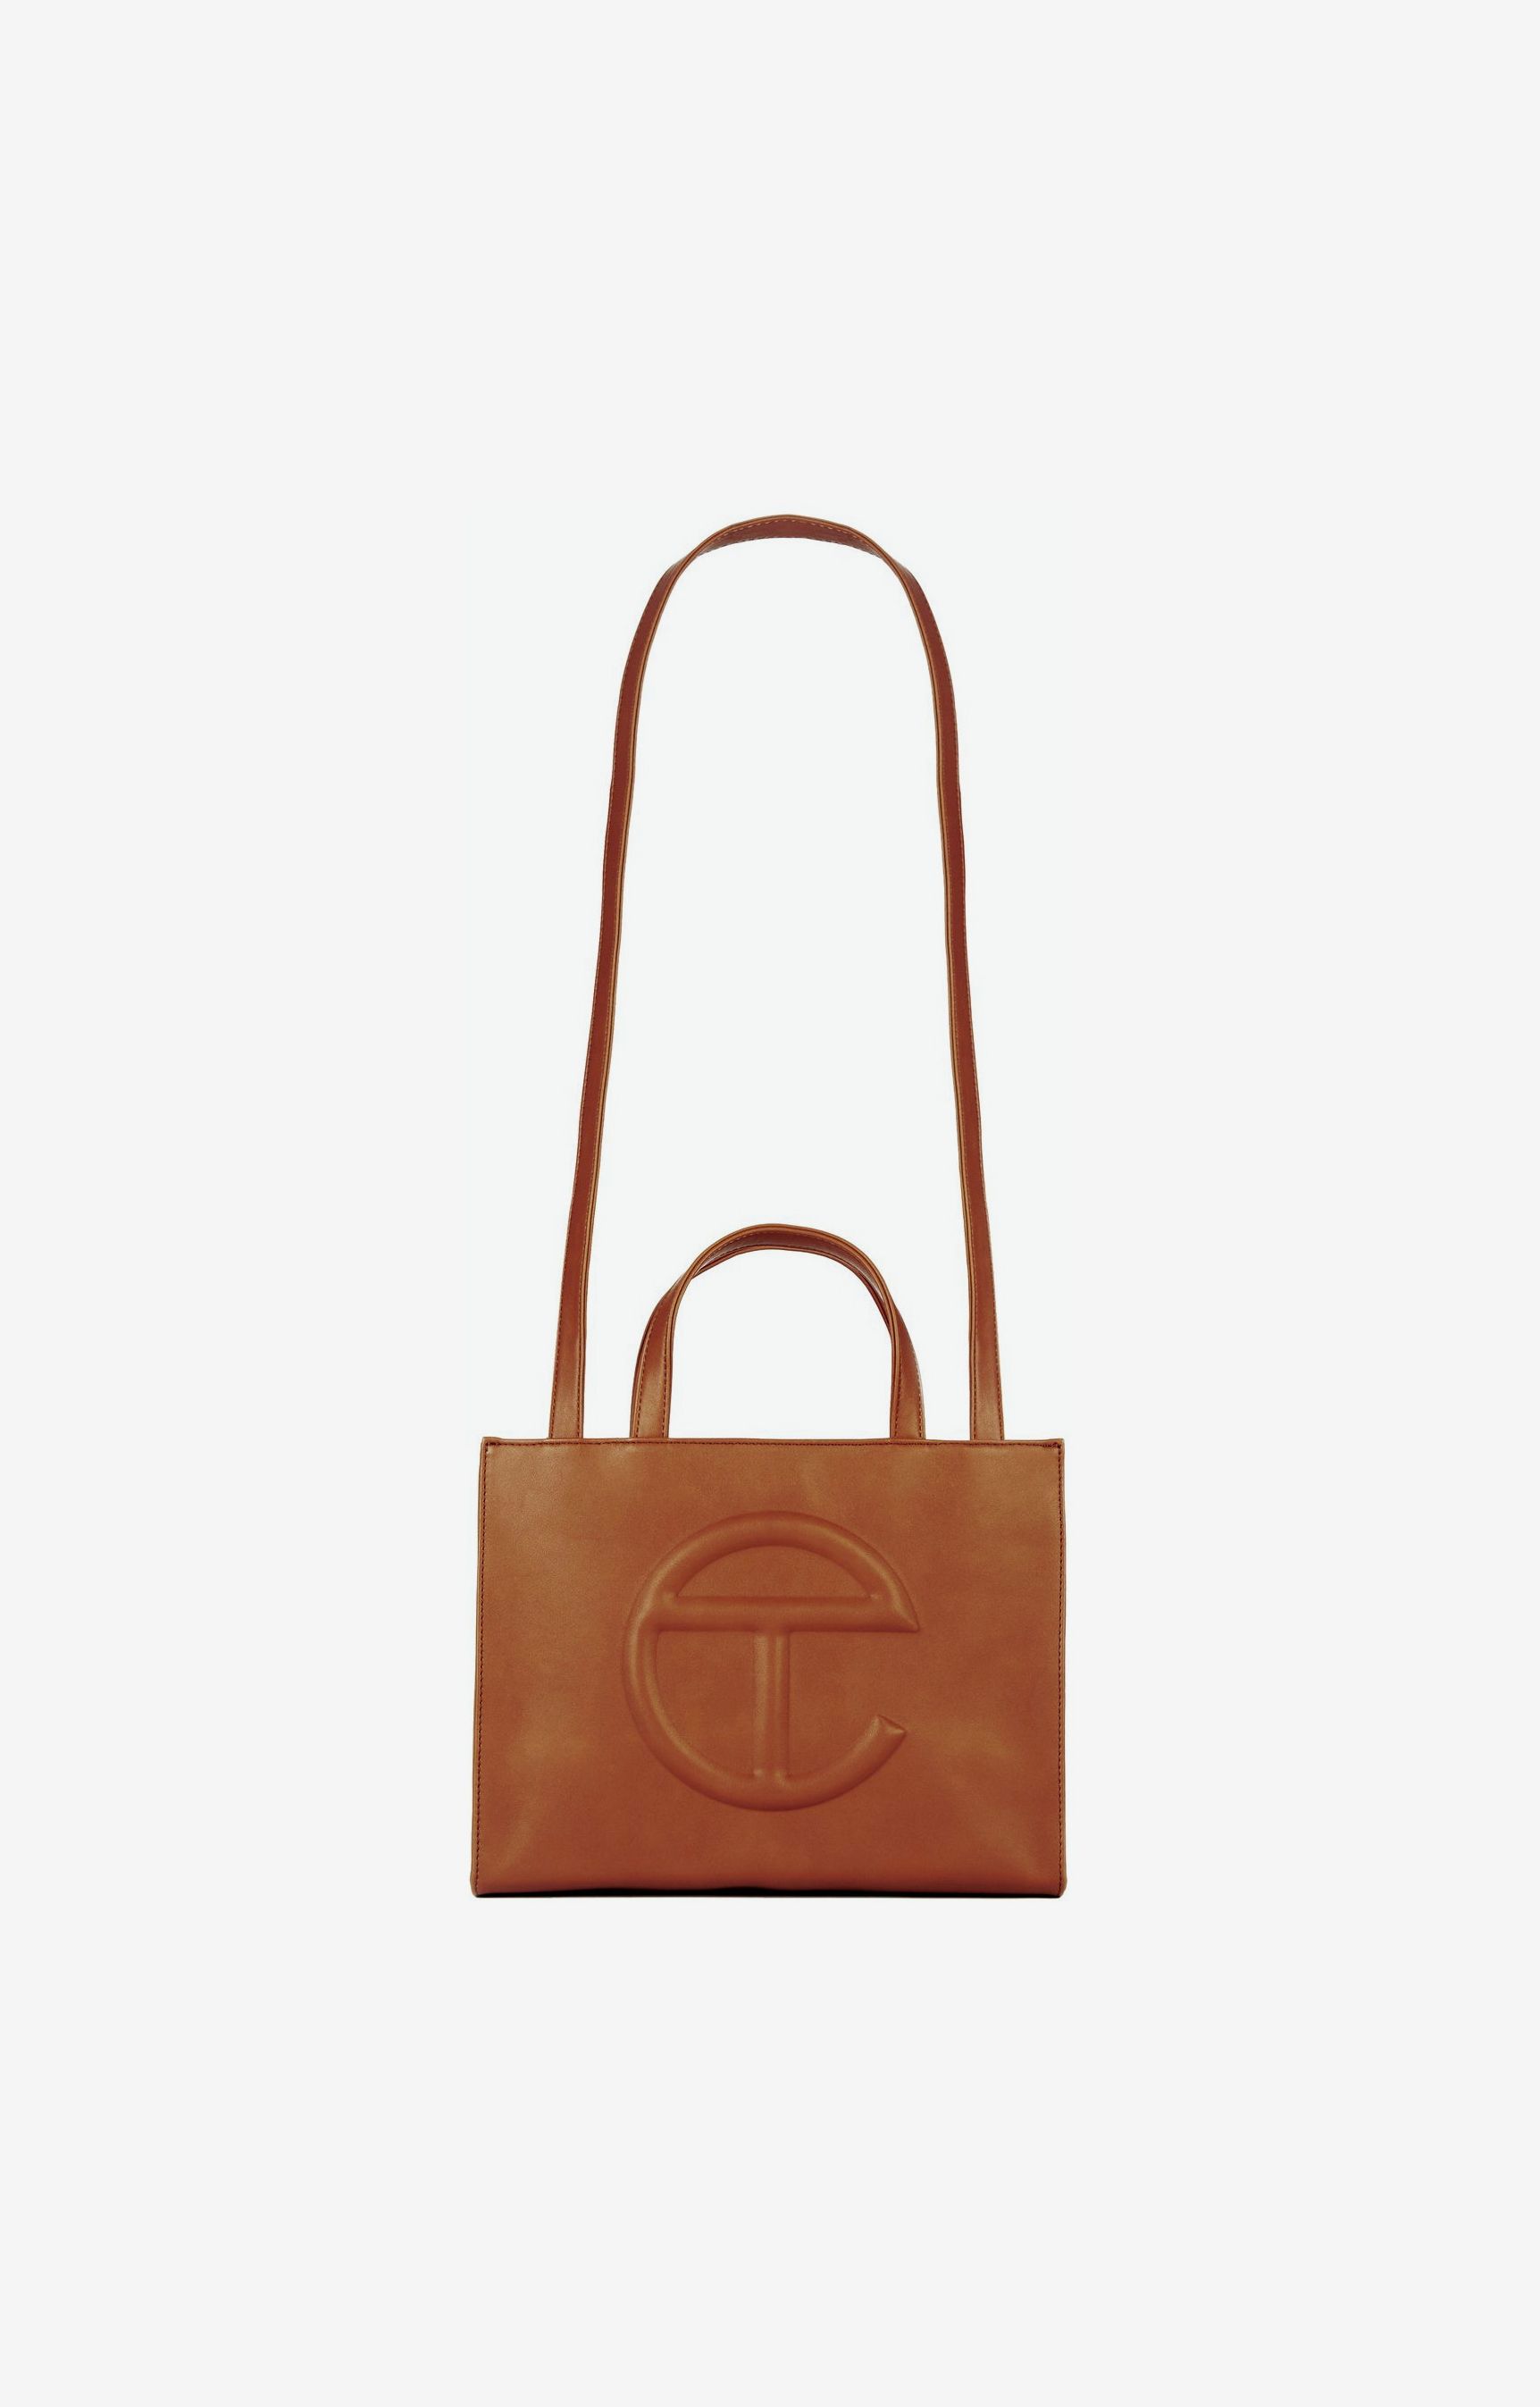 How to Buy a Telfar Bag